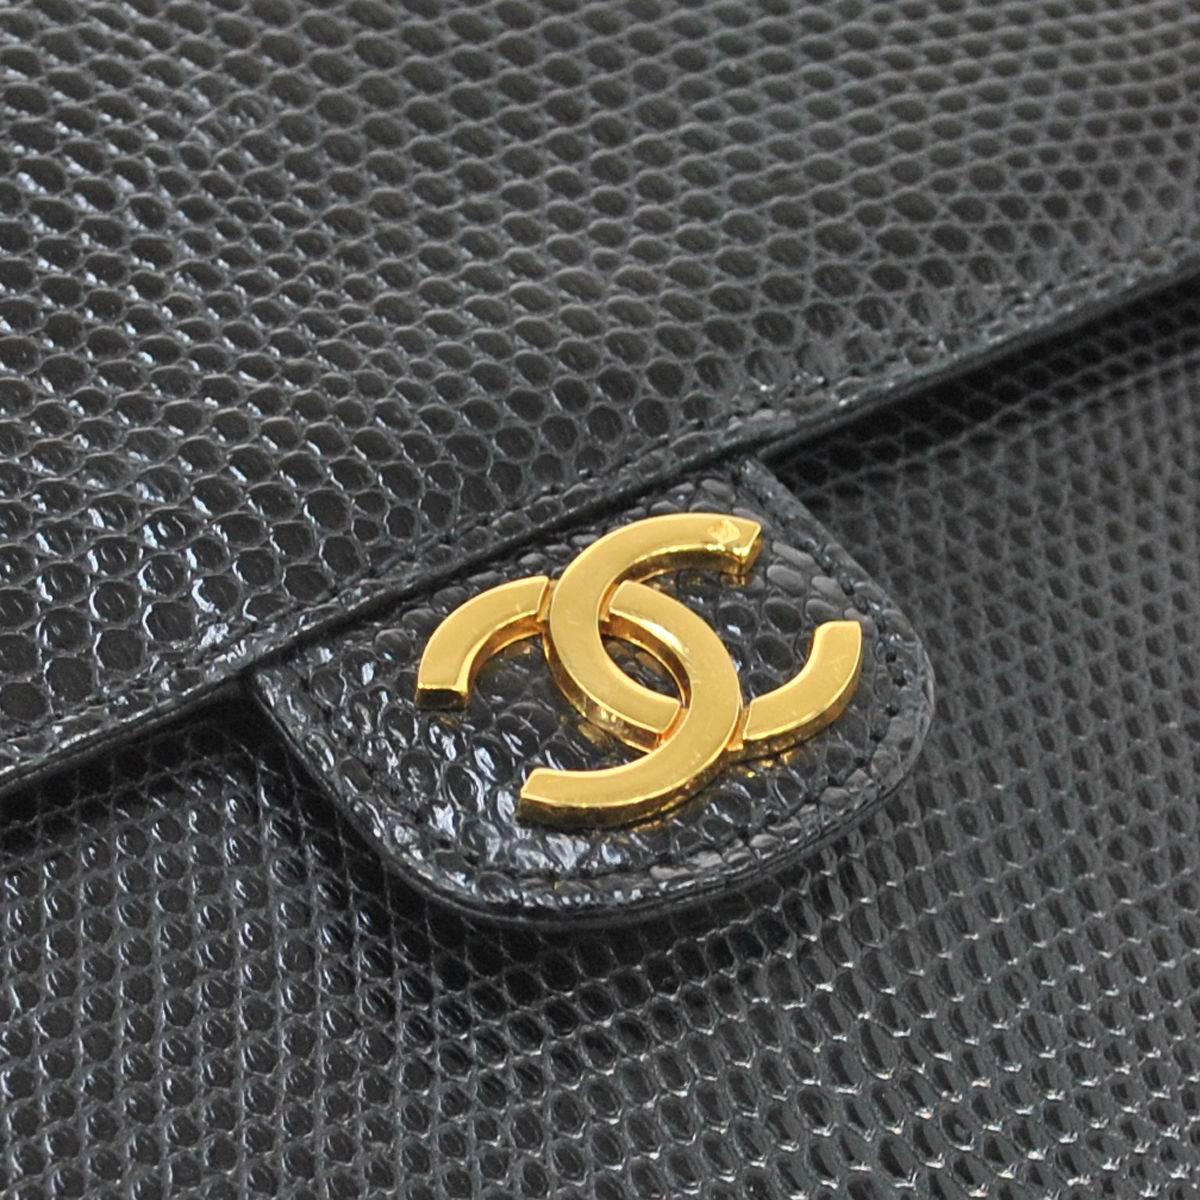 Chanel RARE Black Lizard Gold Evening Flap Shoulder Bag

Lizard
Gold tone hardware
Date code
Made in France
Shoulder strap drop 15.5